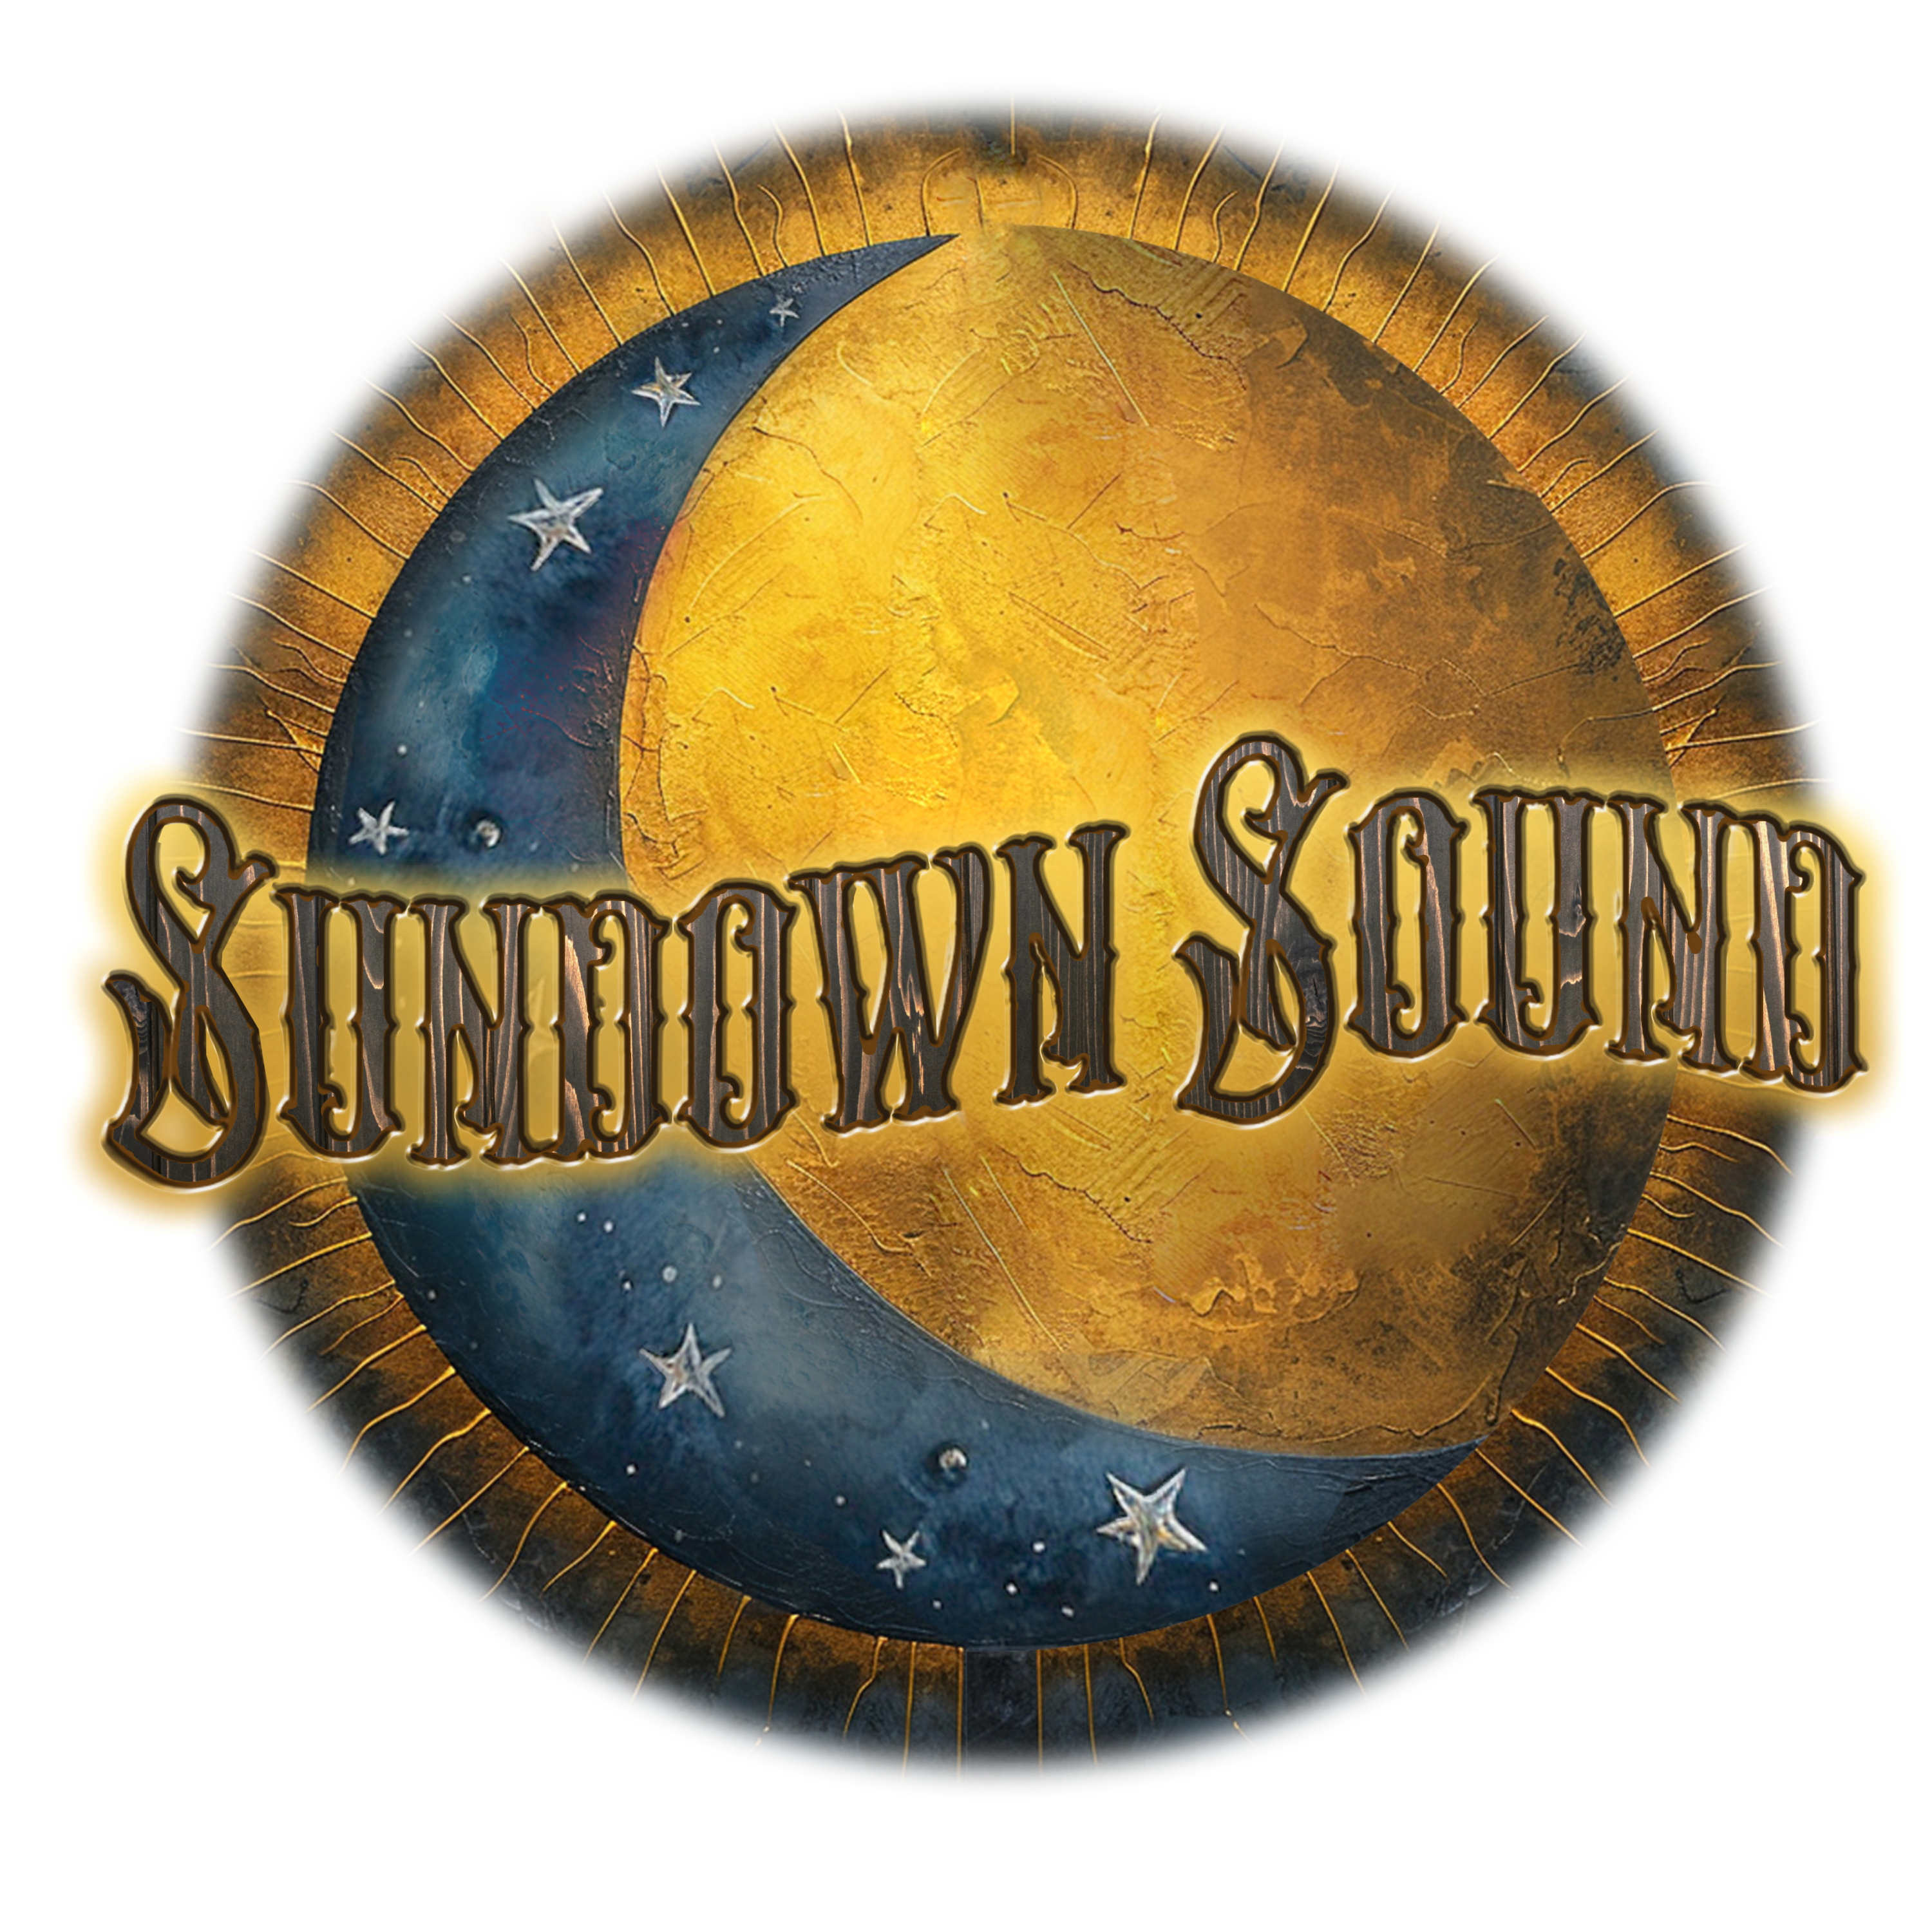 Sundown Sound